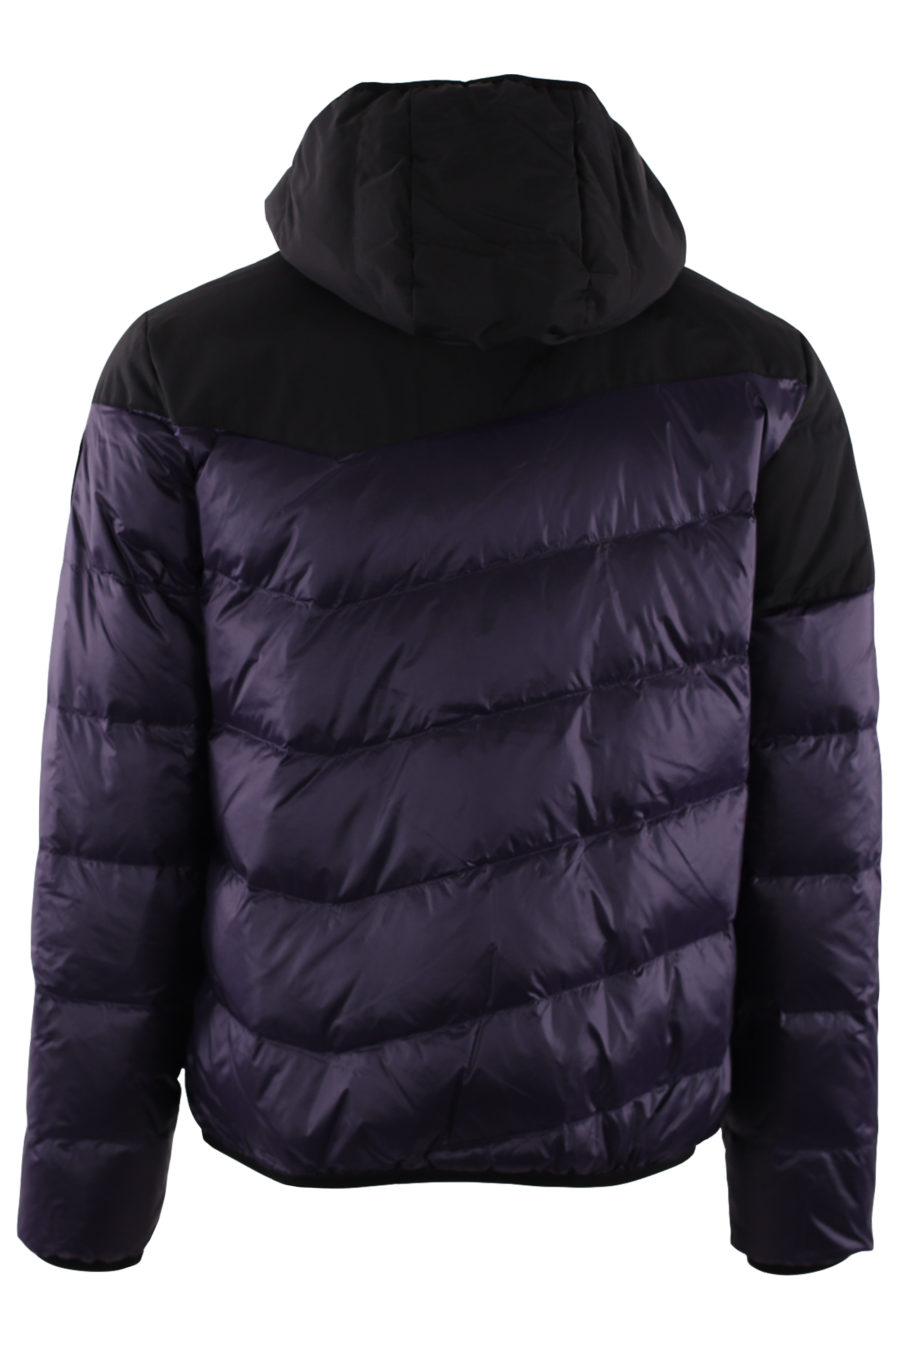 Reversible dark purple reversible jacket - IMG 9425